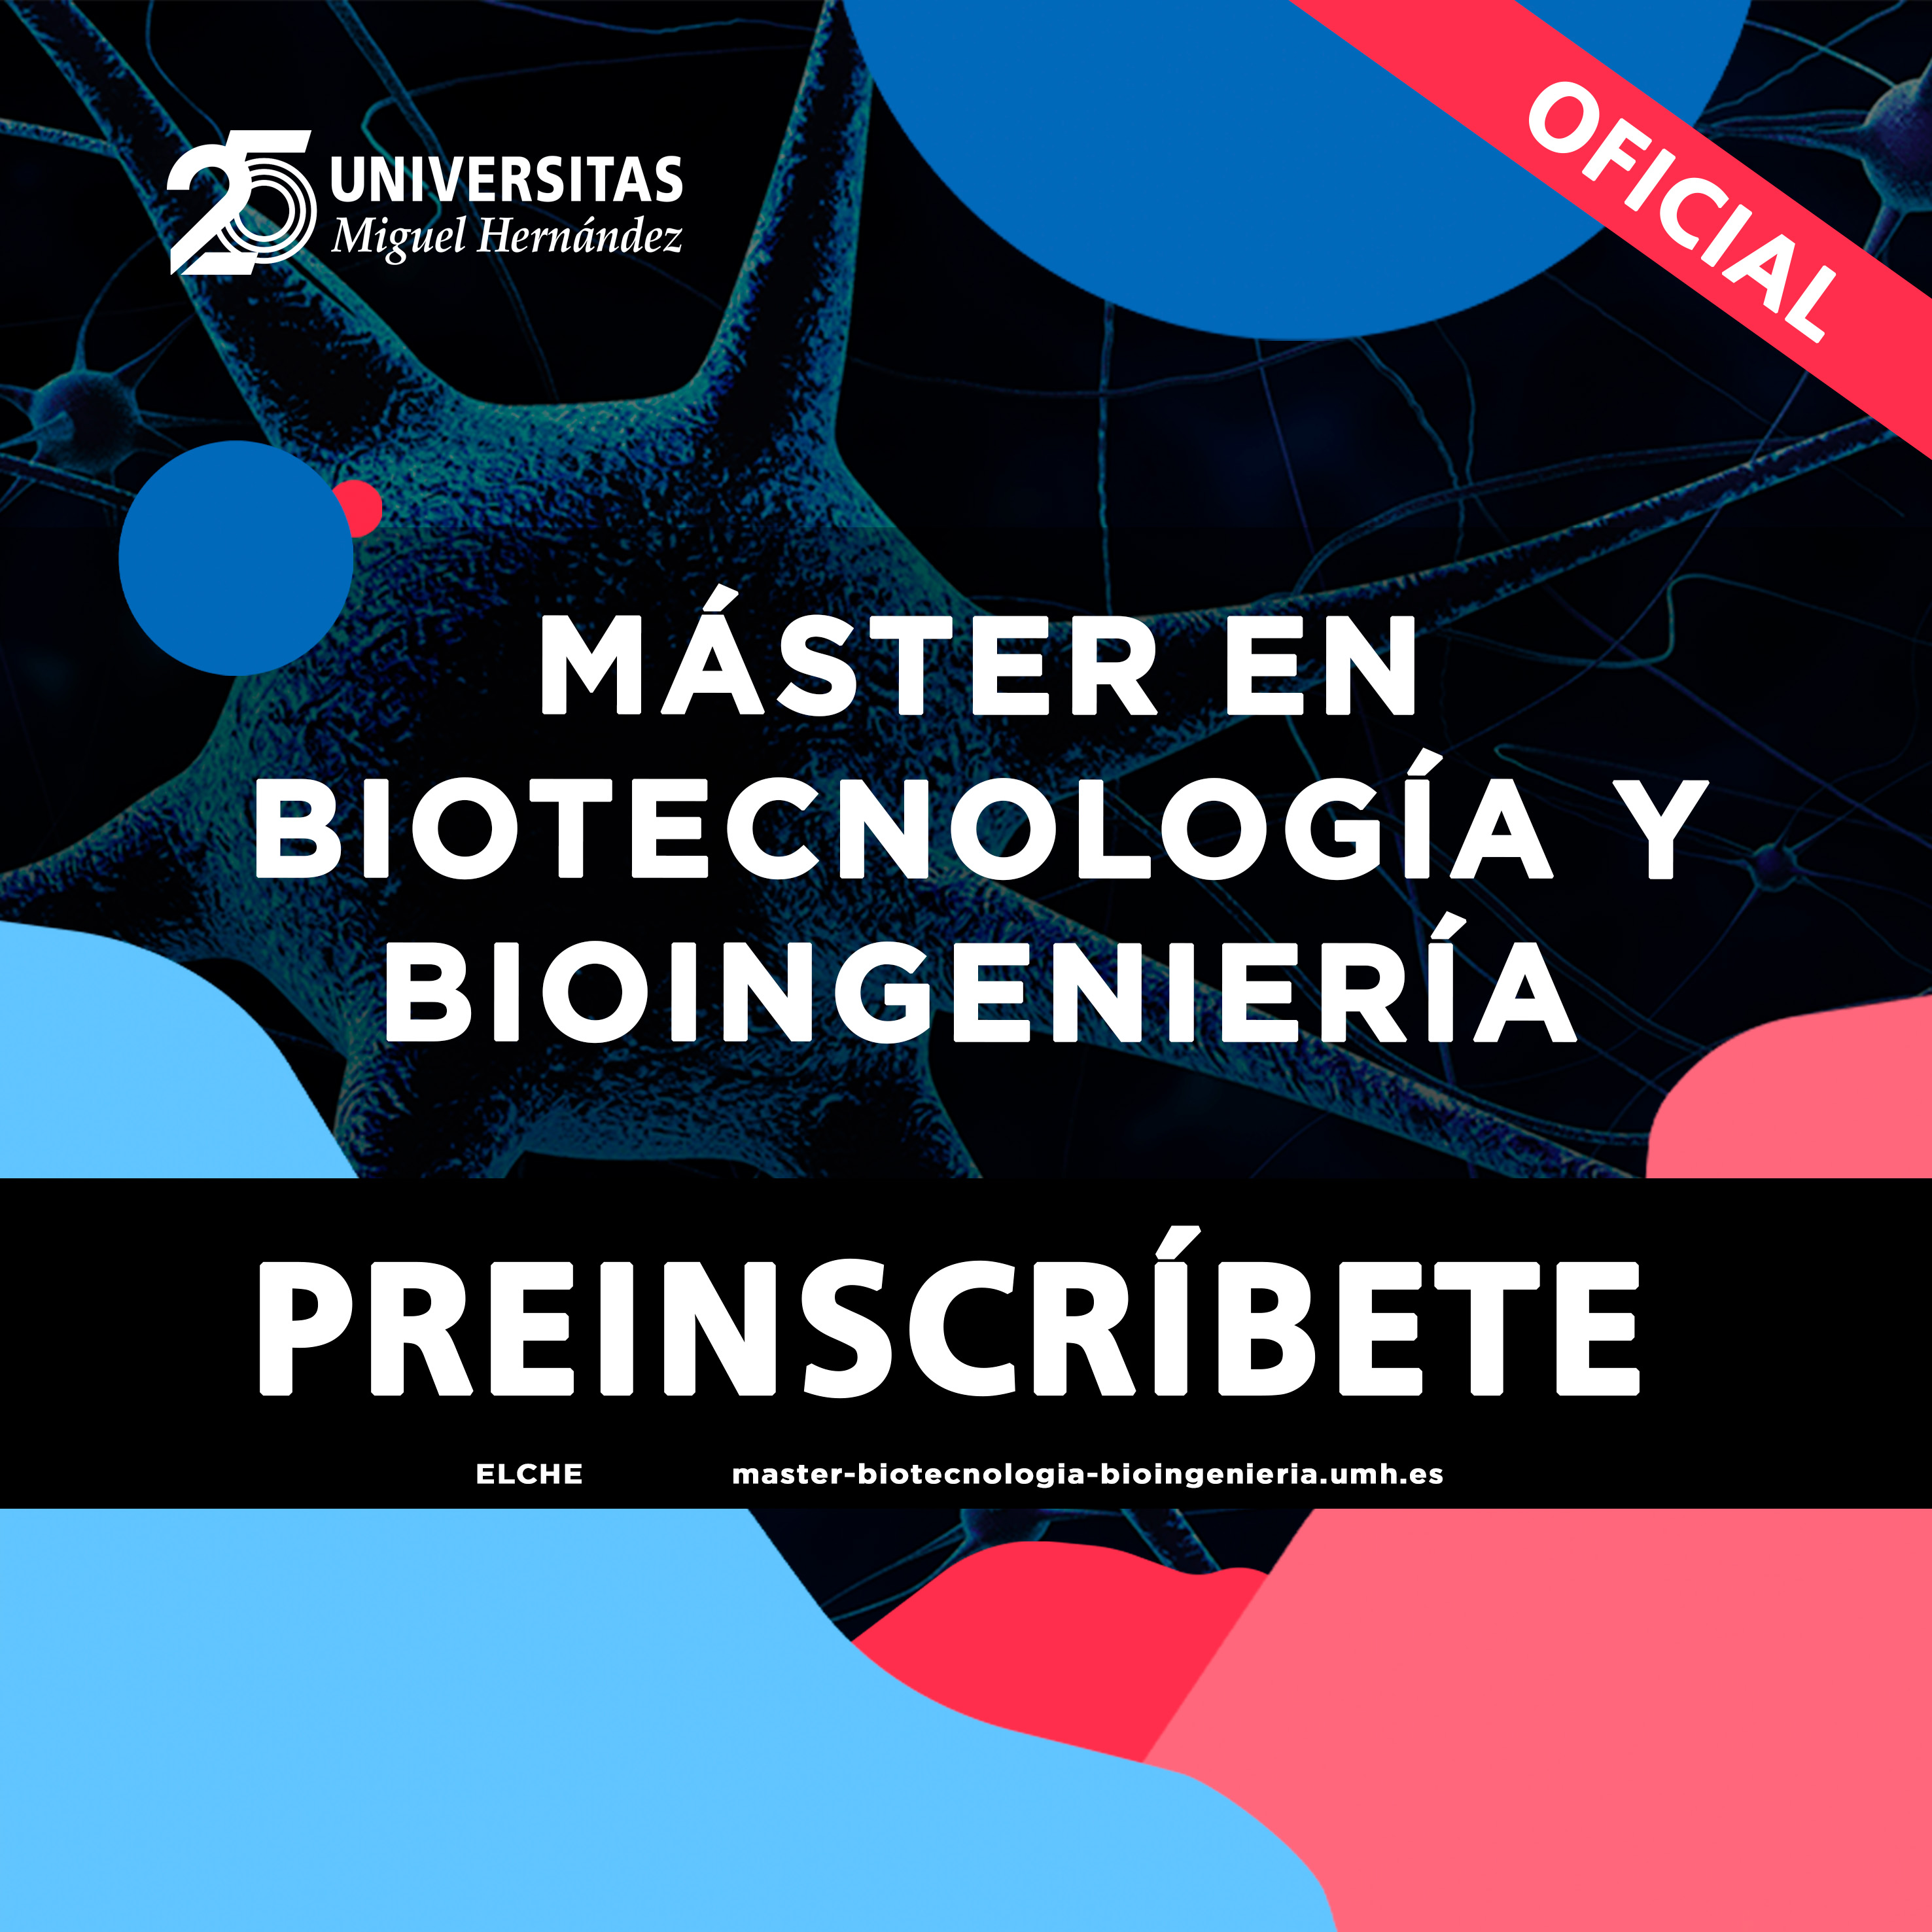 Abierta la preinscripción al Máster en Biotecnología y Bioingeniería 2022-2023